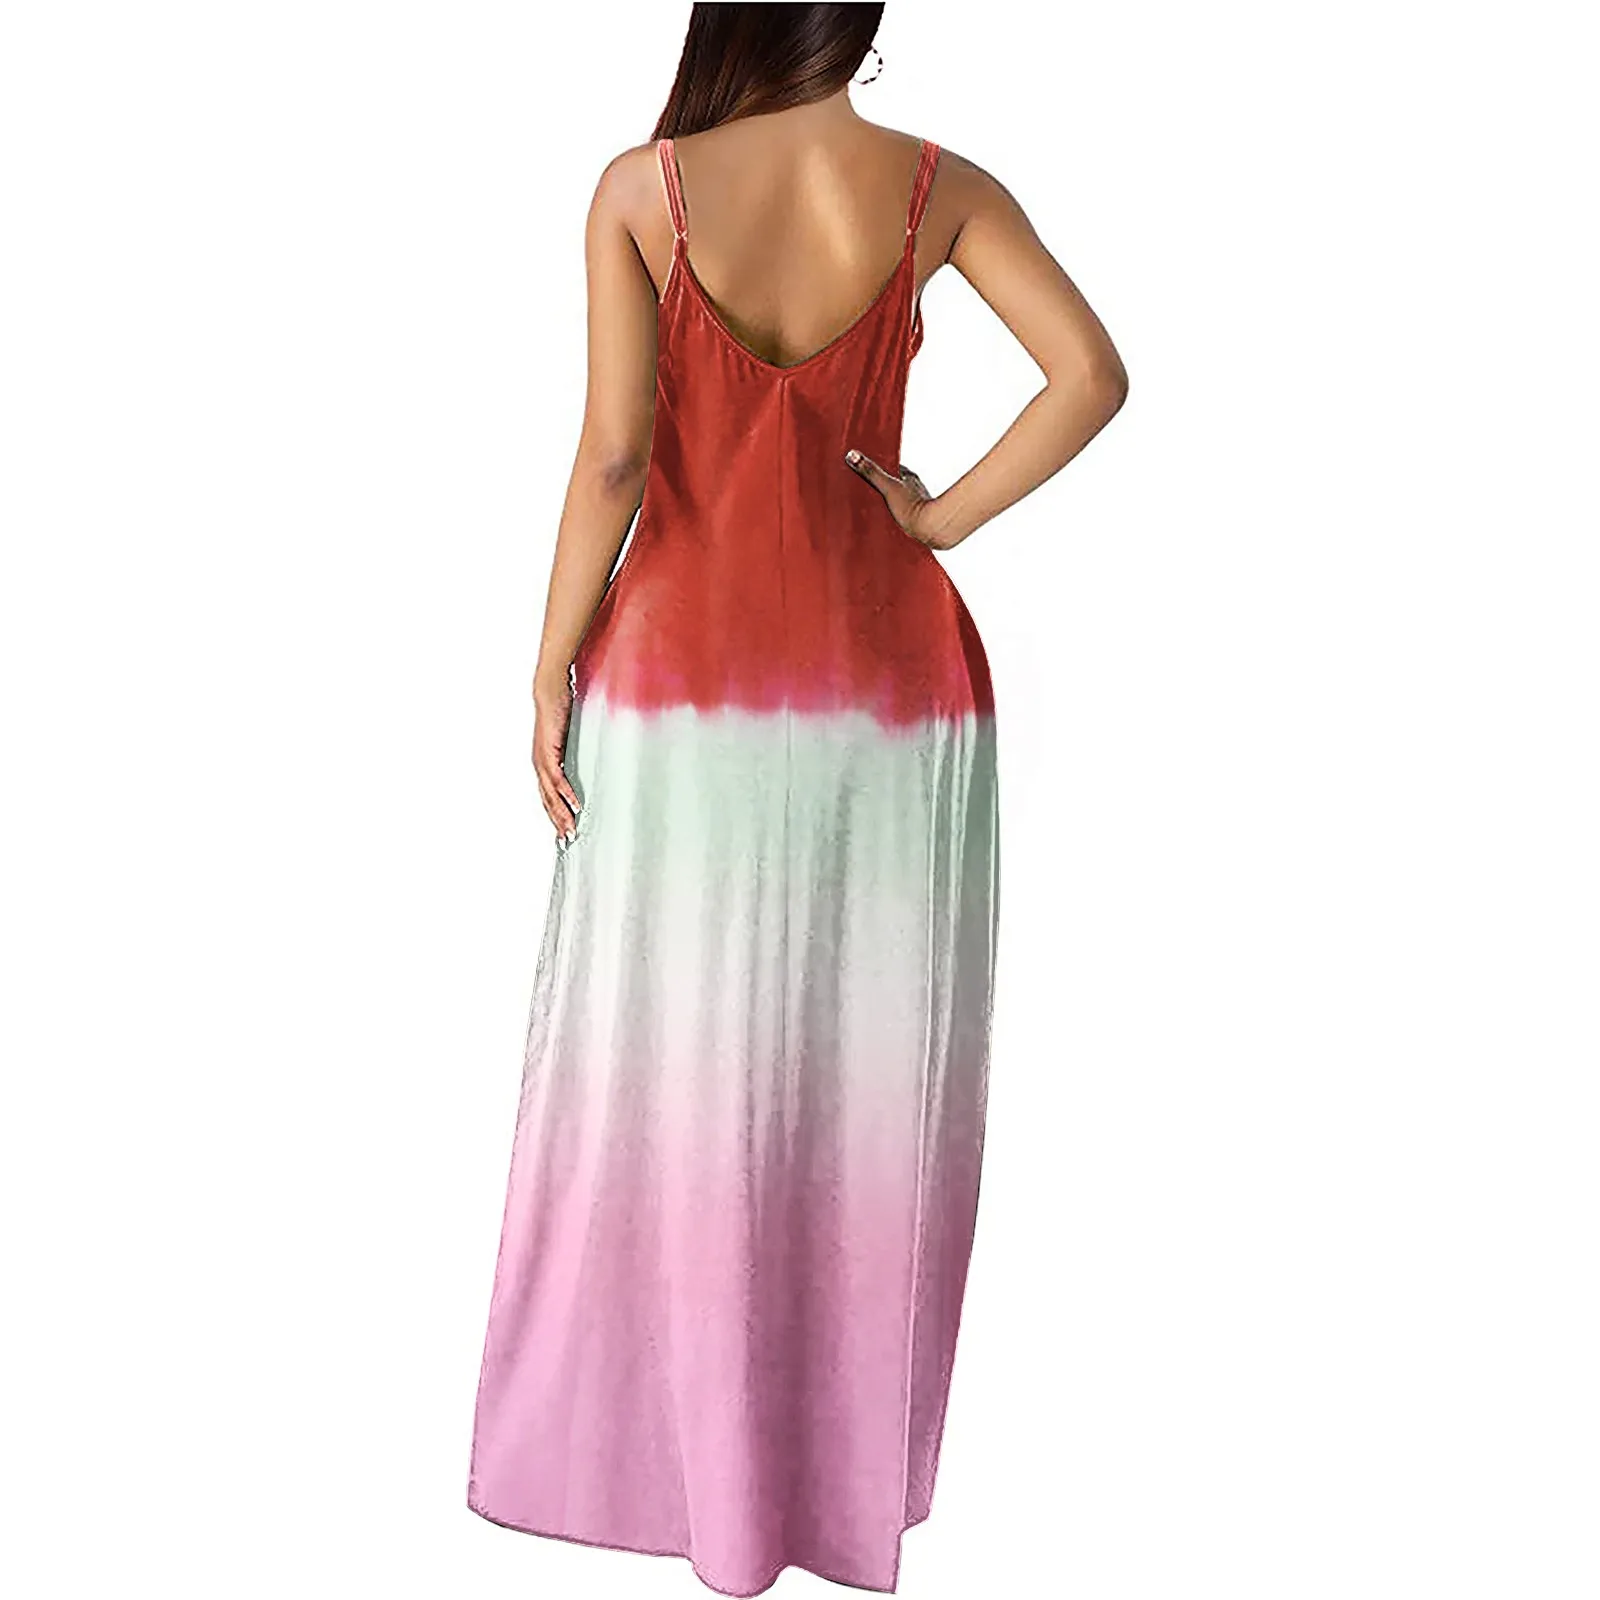 Women's Loose Sleeveless Long Dress - Very Great Deals